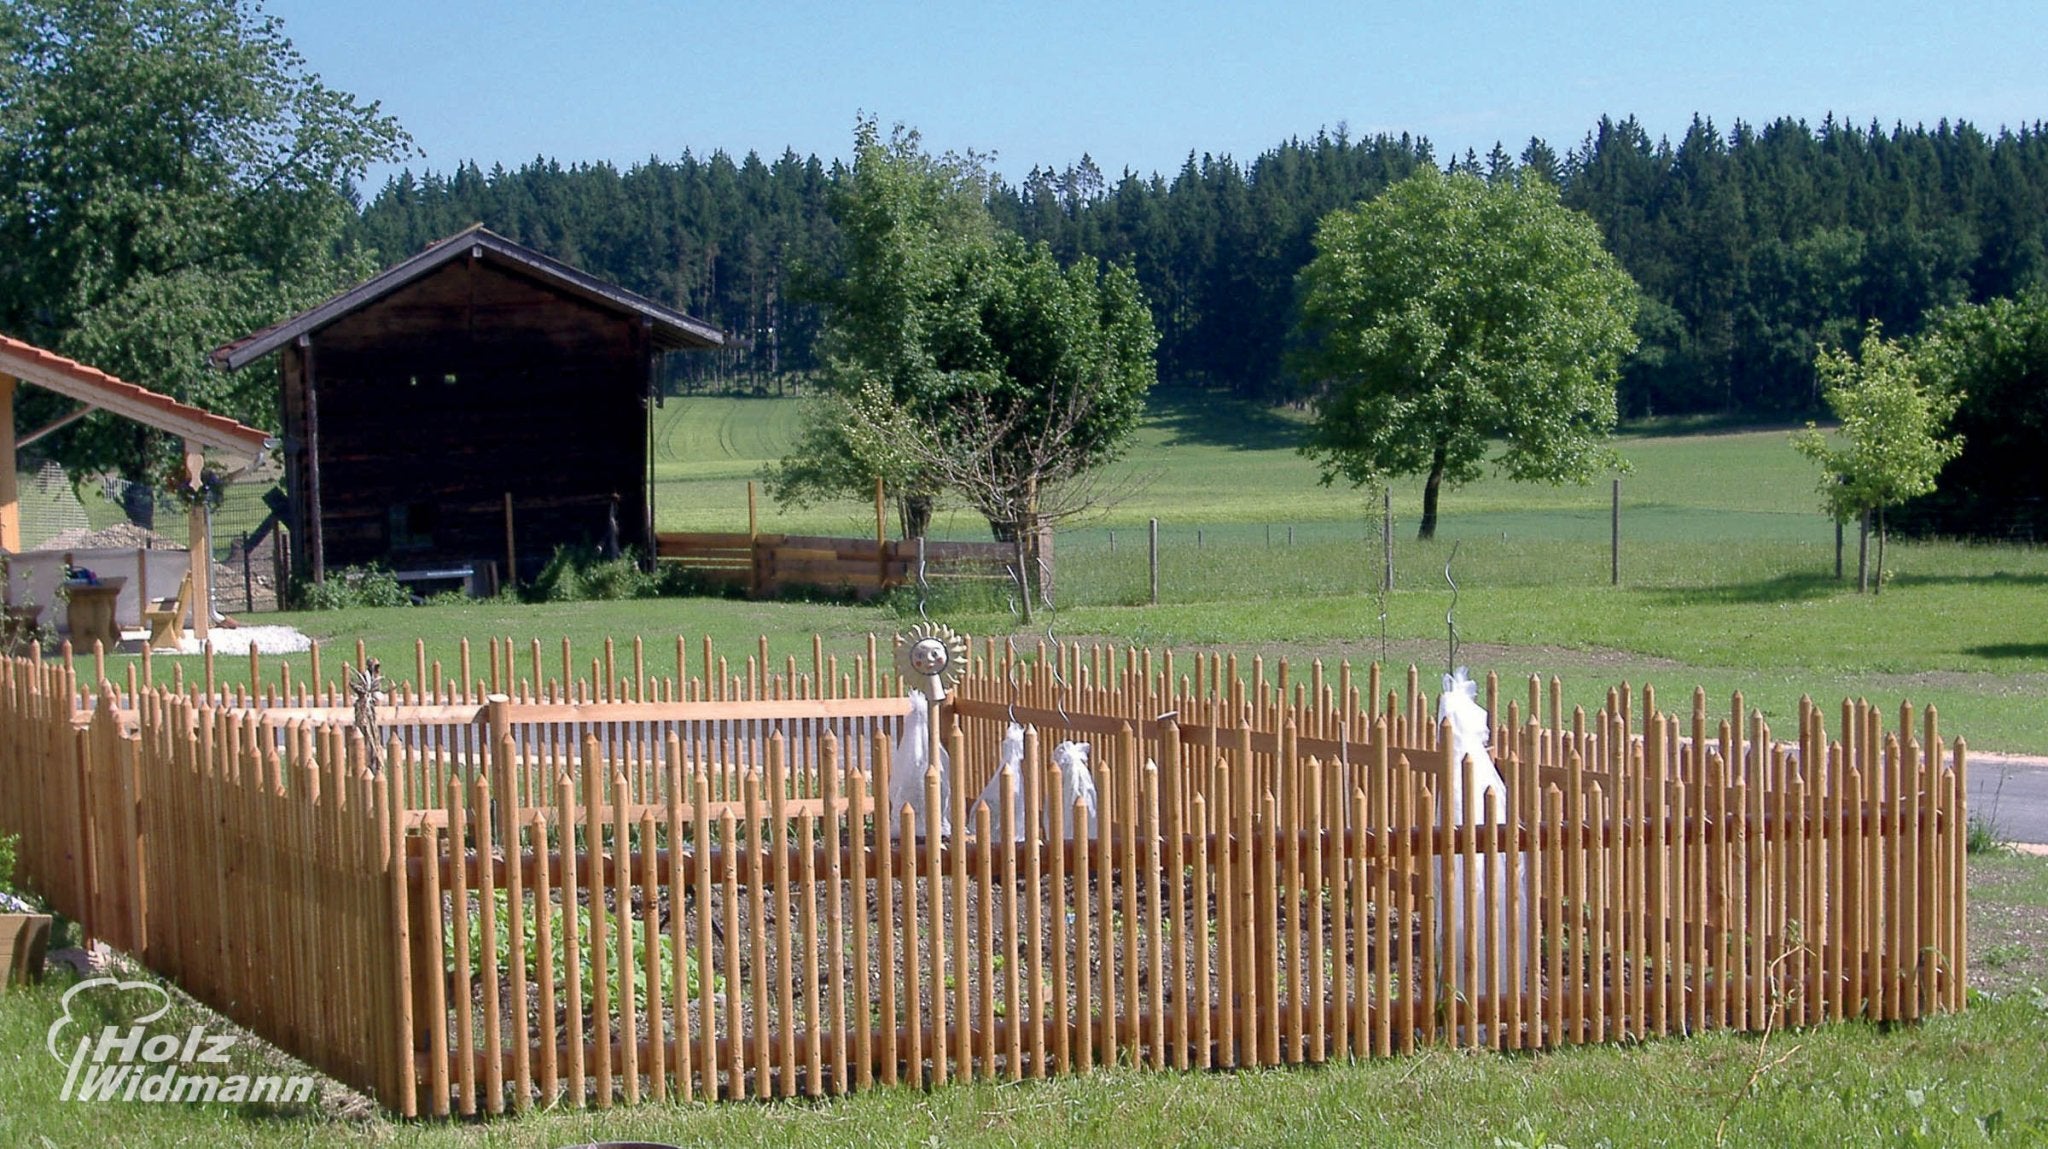 Lärche Hanichel 4cm Durchmesser (Zaunlatte zylindrisch) - kaufen Meine Holzhandlung - Holz kaufen München